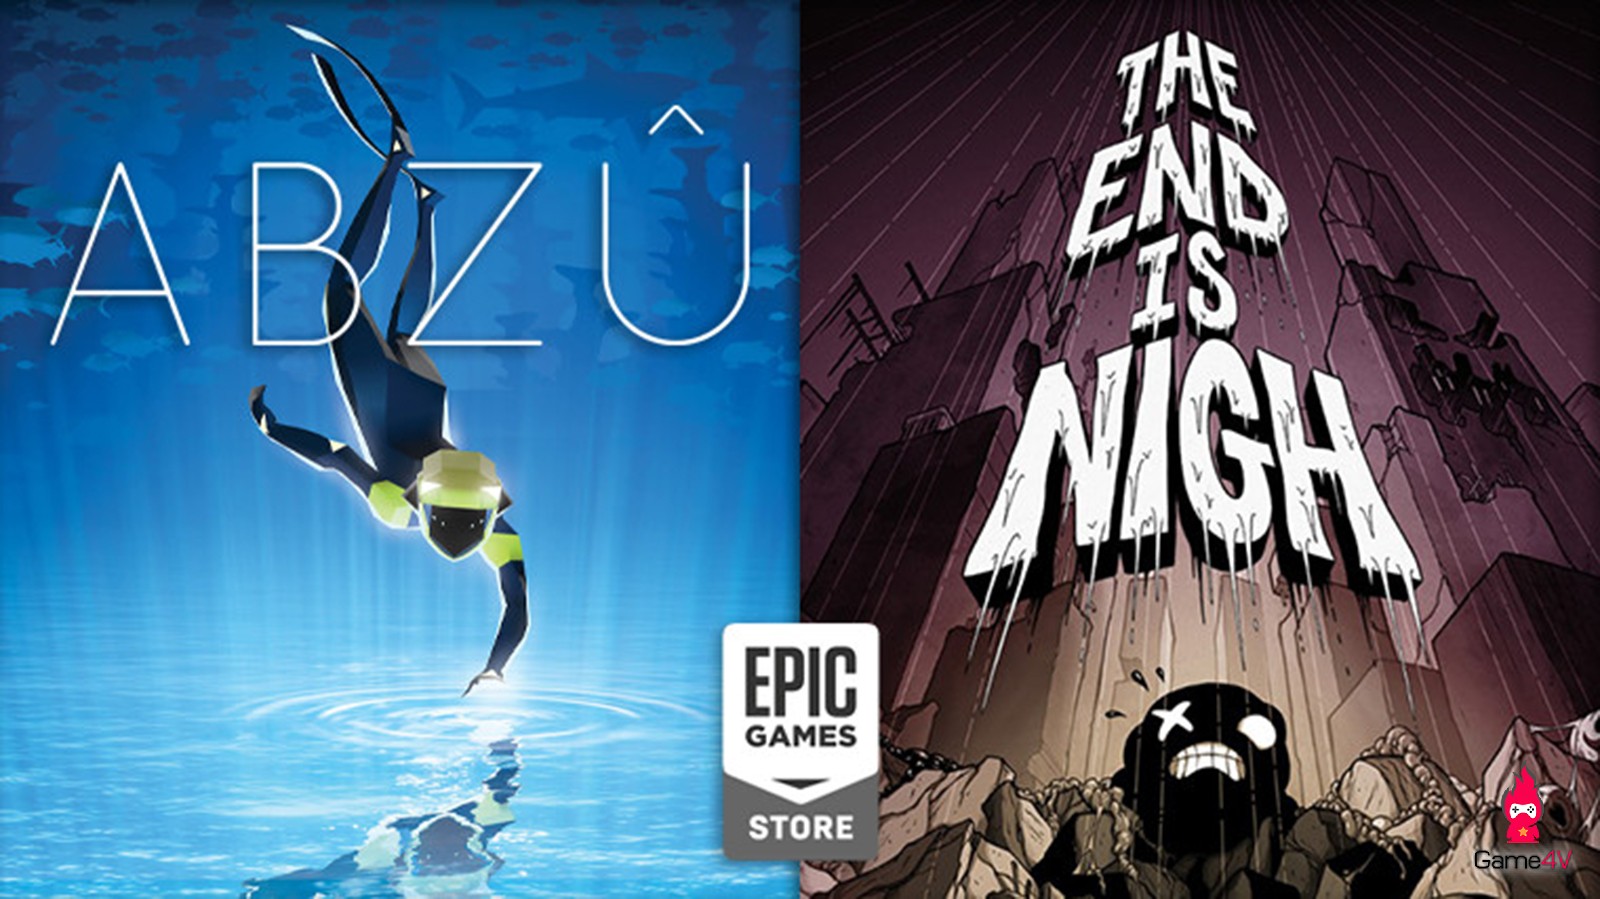 [Hướng dẫn] Nhận 2 game miễn phí Abzu và The End is Nigh trên Epic Store